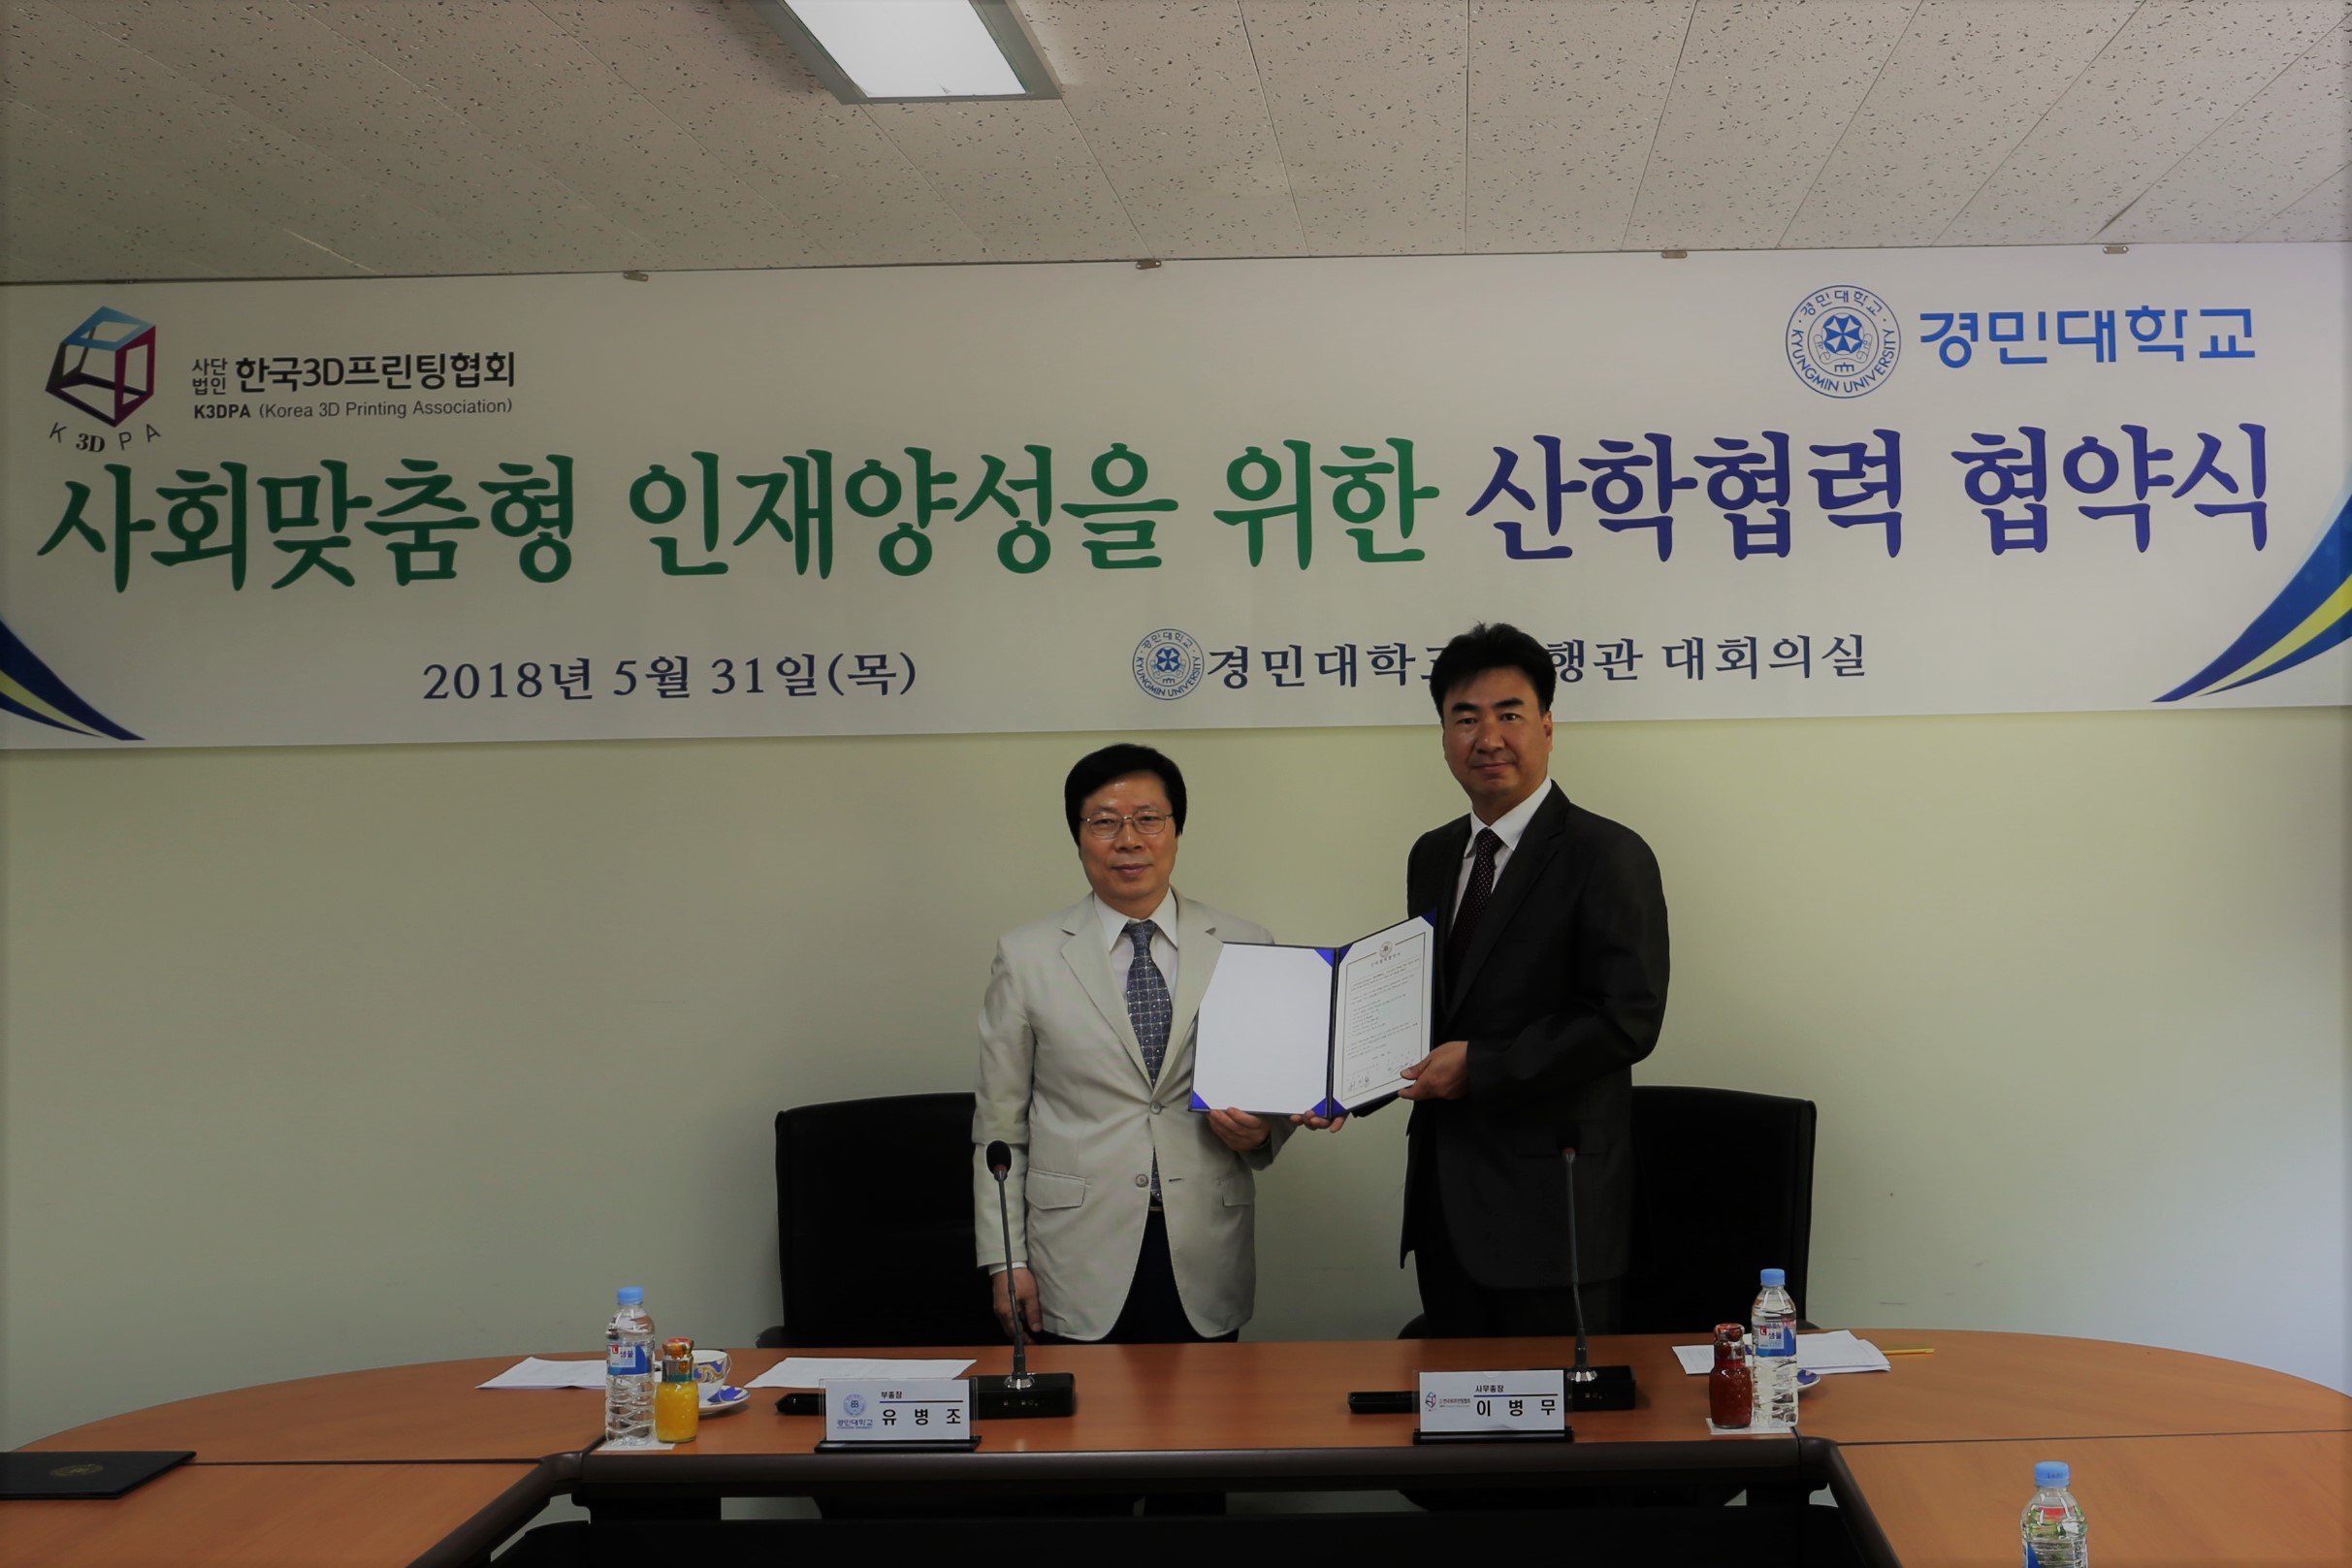 경민대학교, 한국3D프린팅협회와 산학협력 업무협약 체결 사진